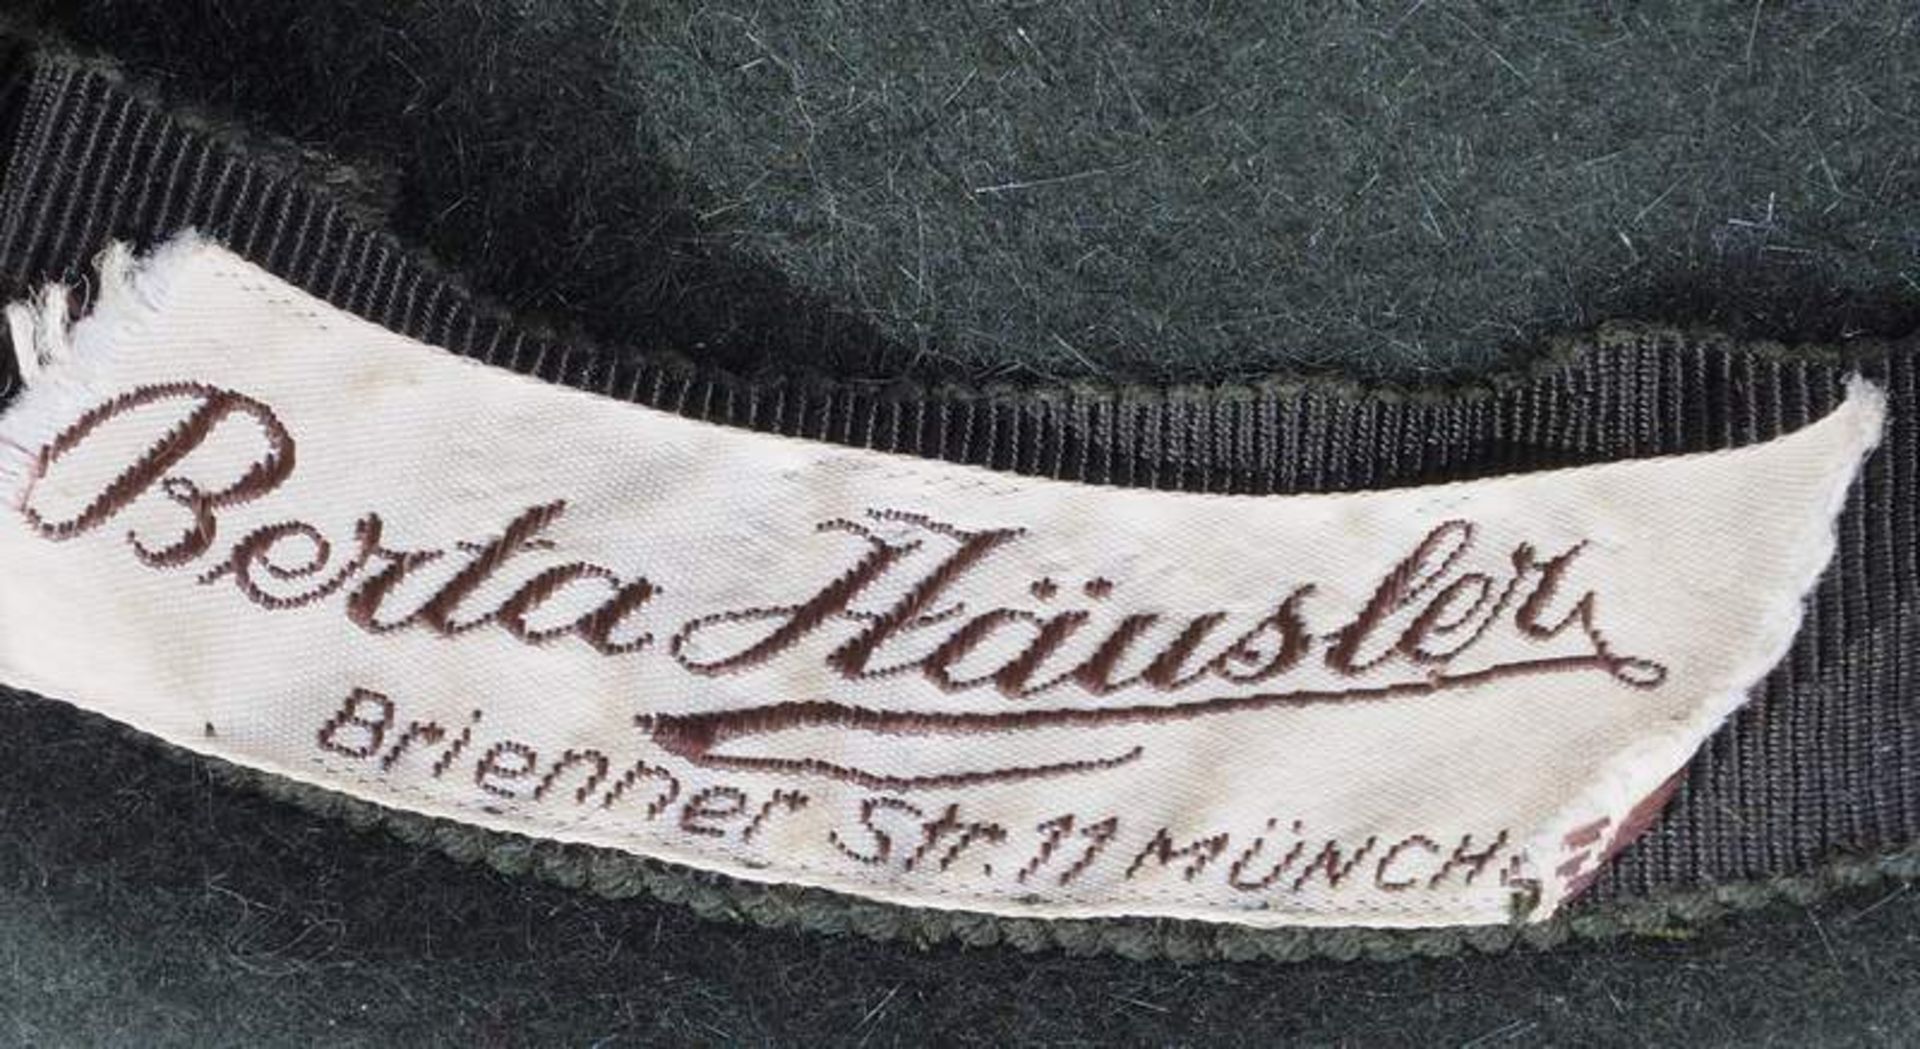 Damen-Trachenhut mit Gamsbart und zahlreichen Dekorationen. Innen Huthersteller Berta Häusler, - Bild 6 aus 6